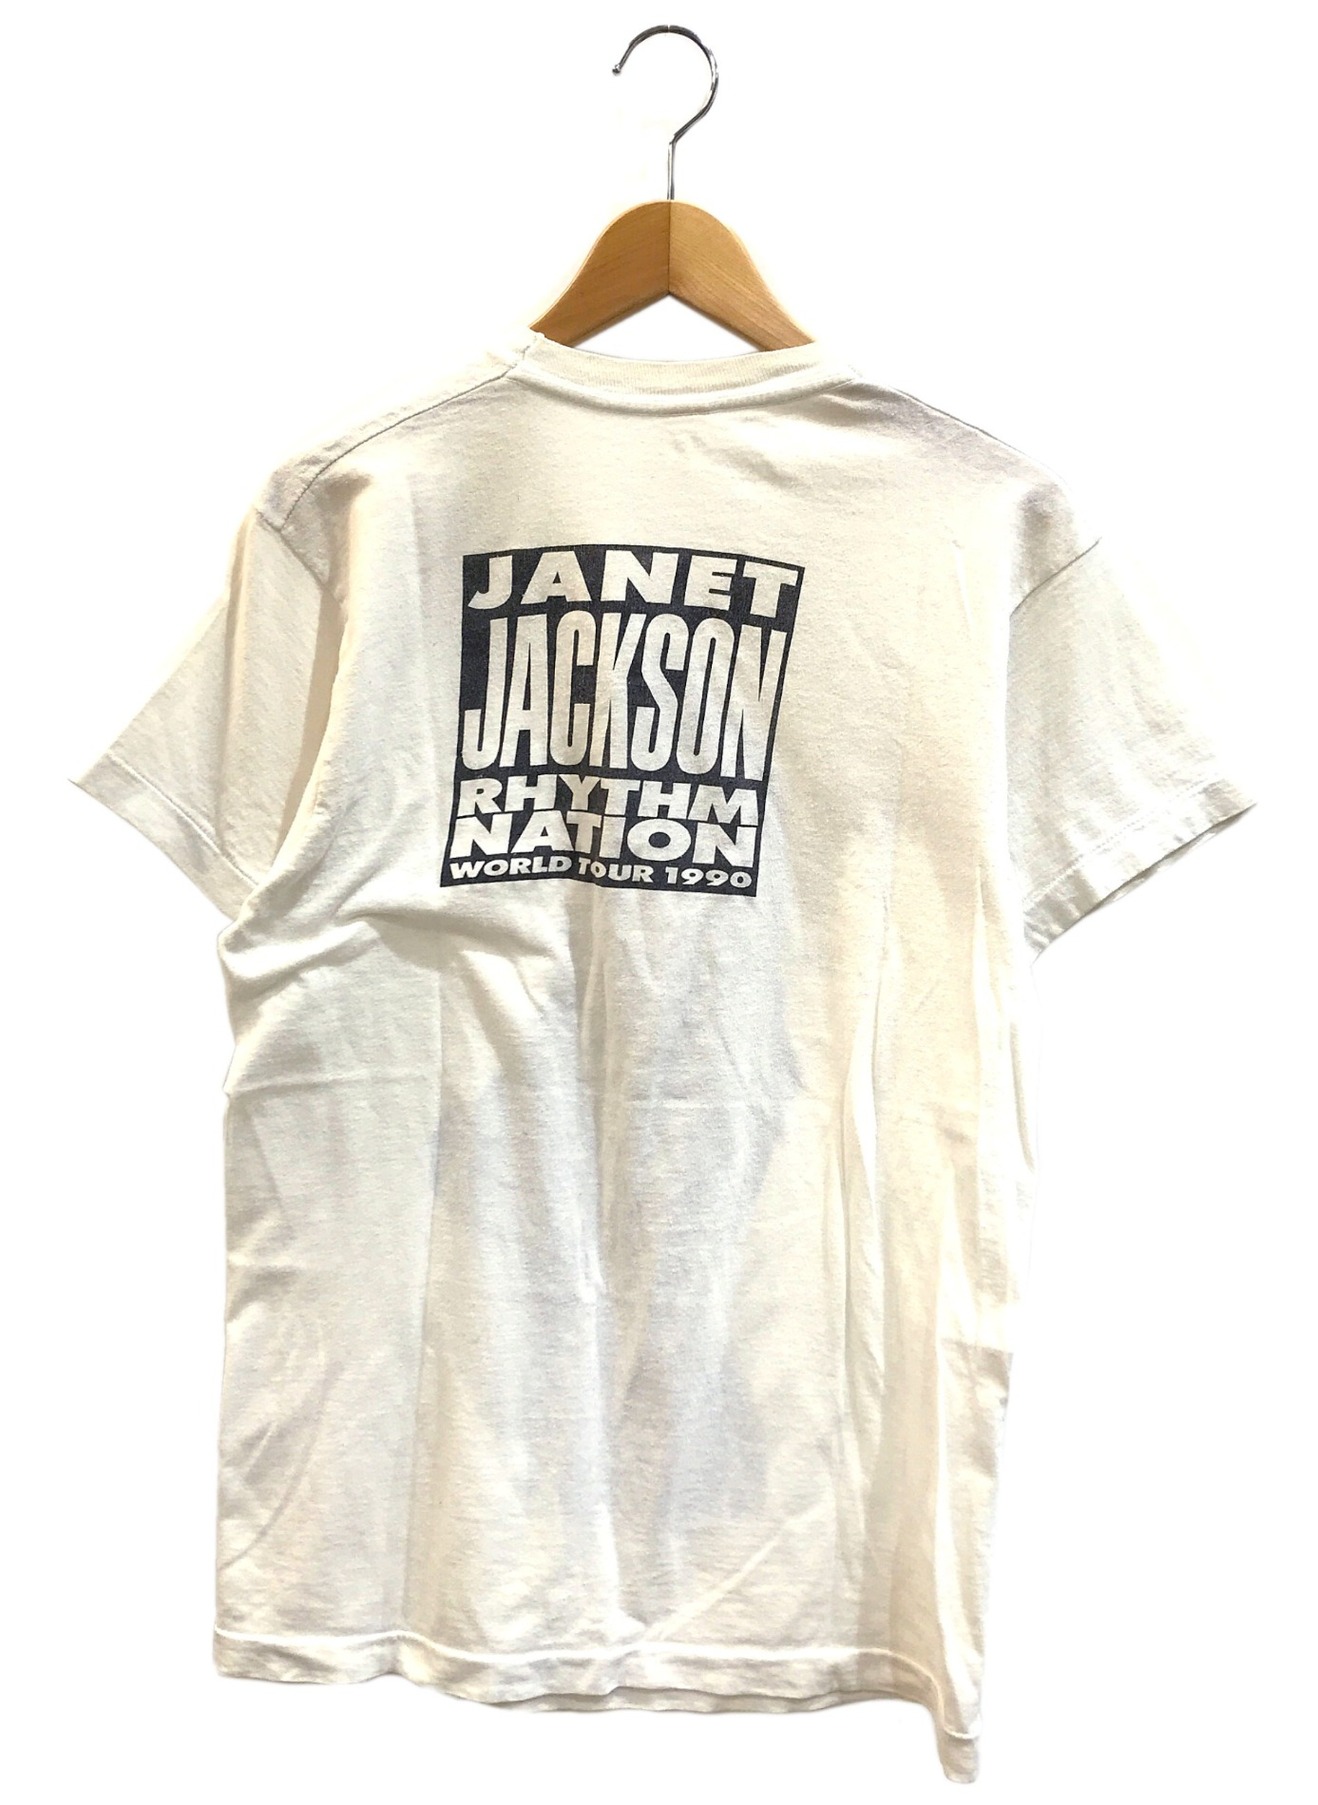 janet jackson ジャネットジャクソン 1990 Tシャツ